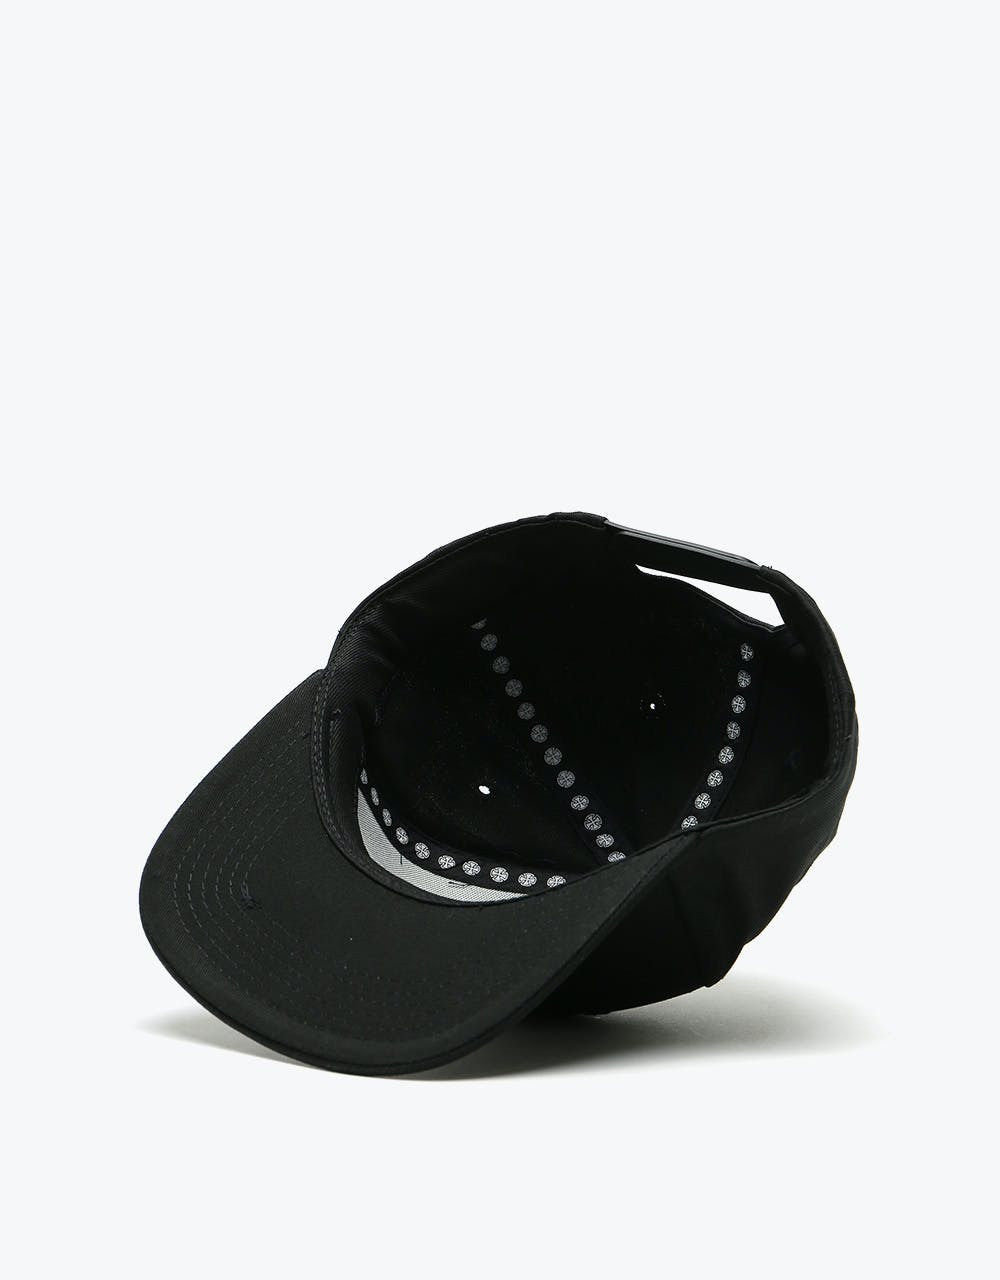 Independent ITC Bauhaus Snapback Cap - Black